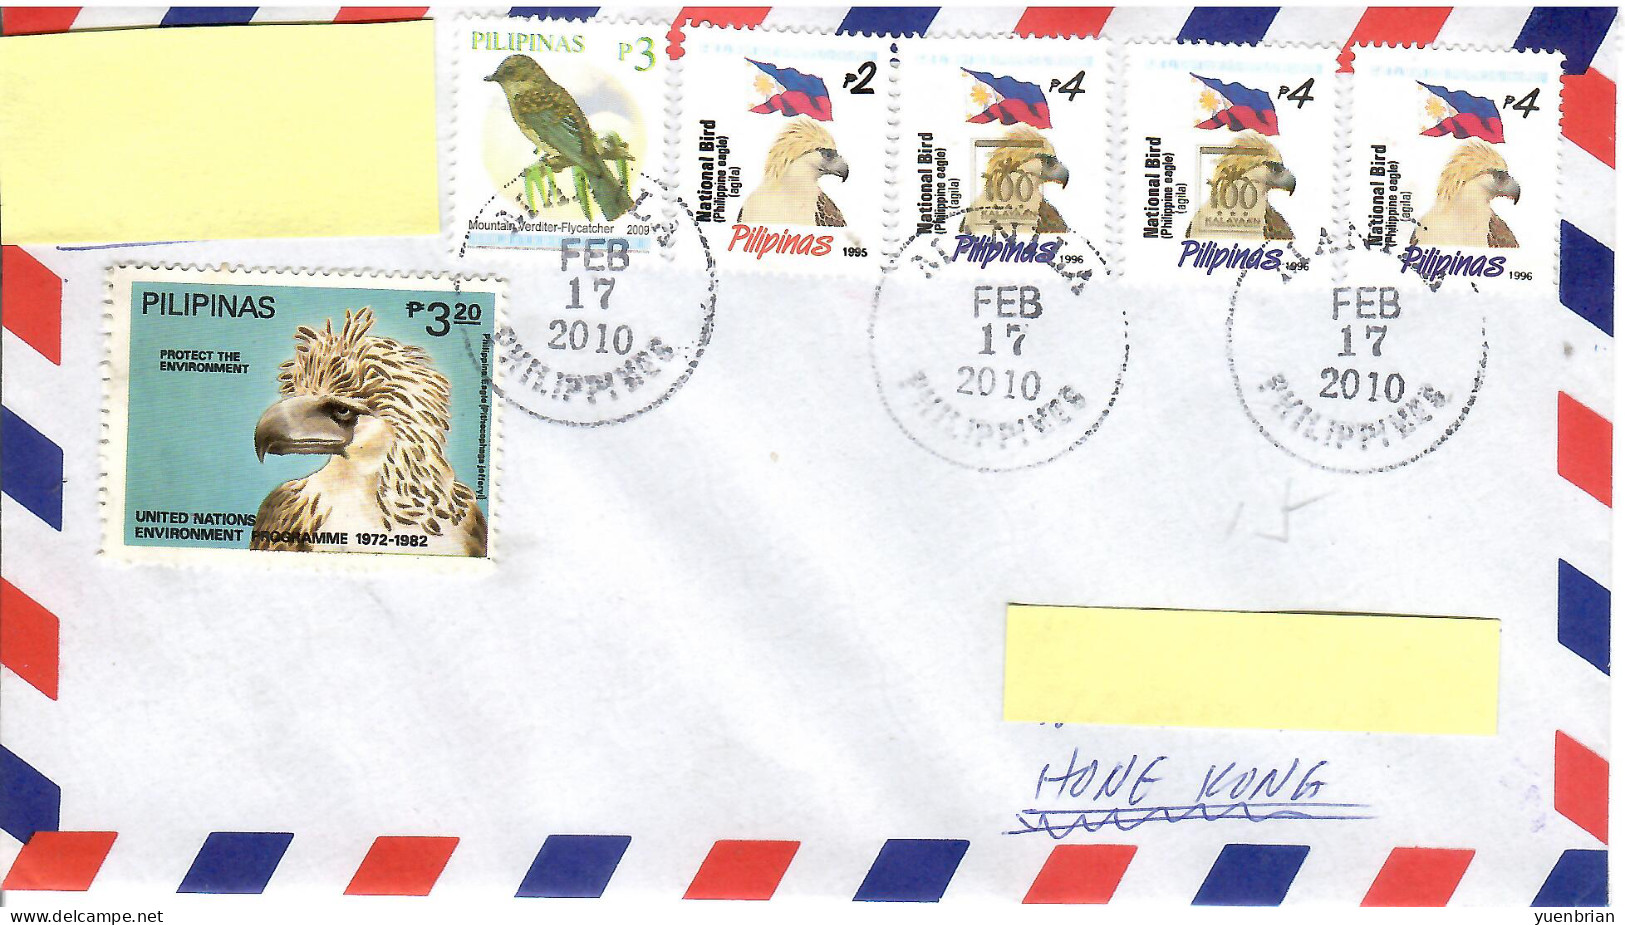 Philippines 2010, Bird, Birds, Eagle, Circulated Cover, Good Condition - Eagles & Birds Of Prey